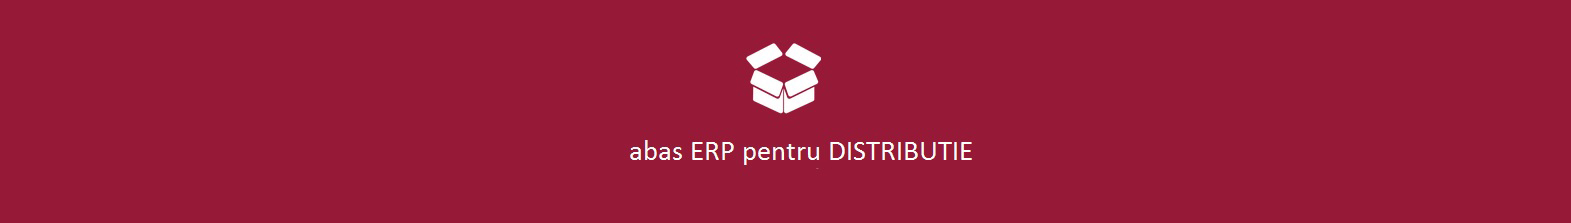 abas ERP pentru distributie